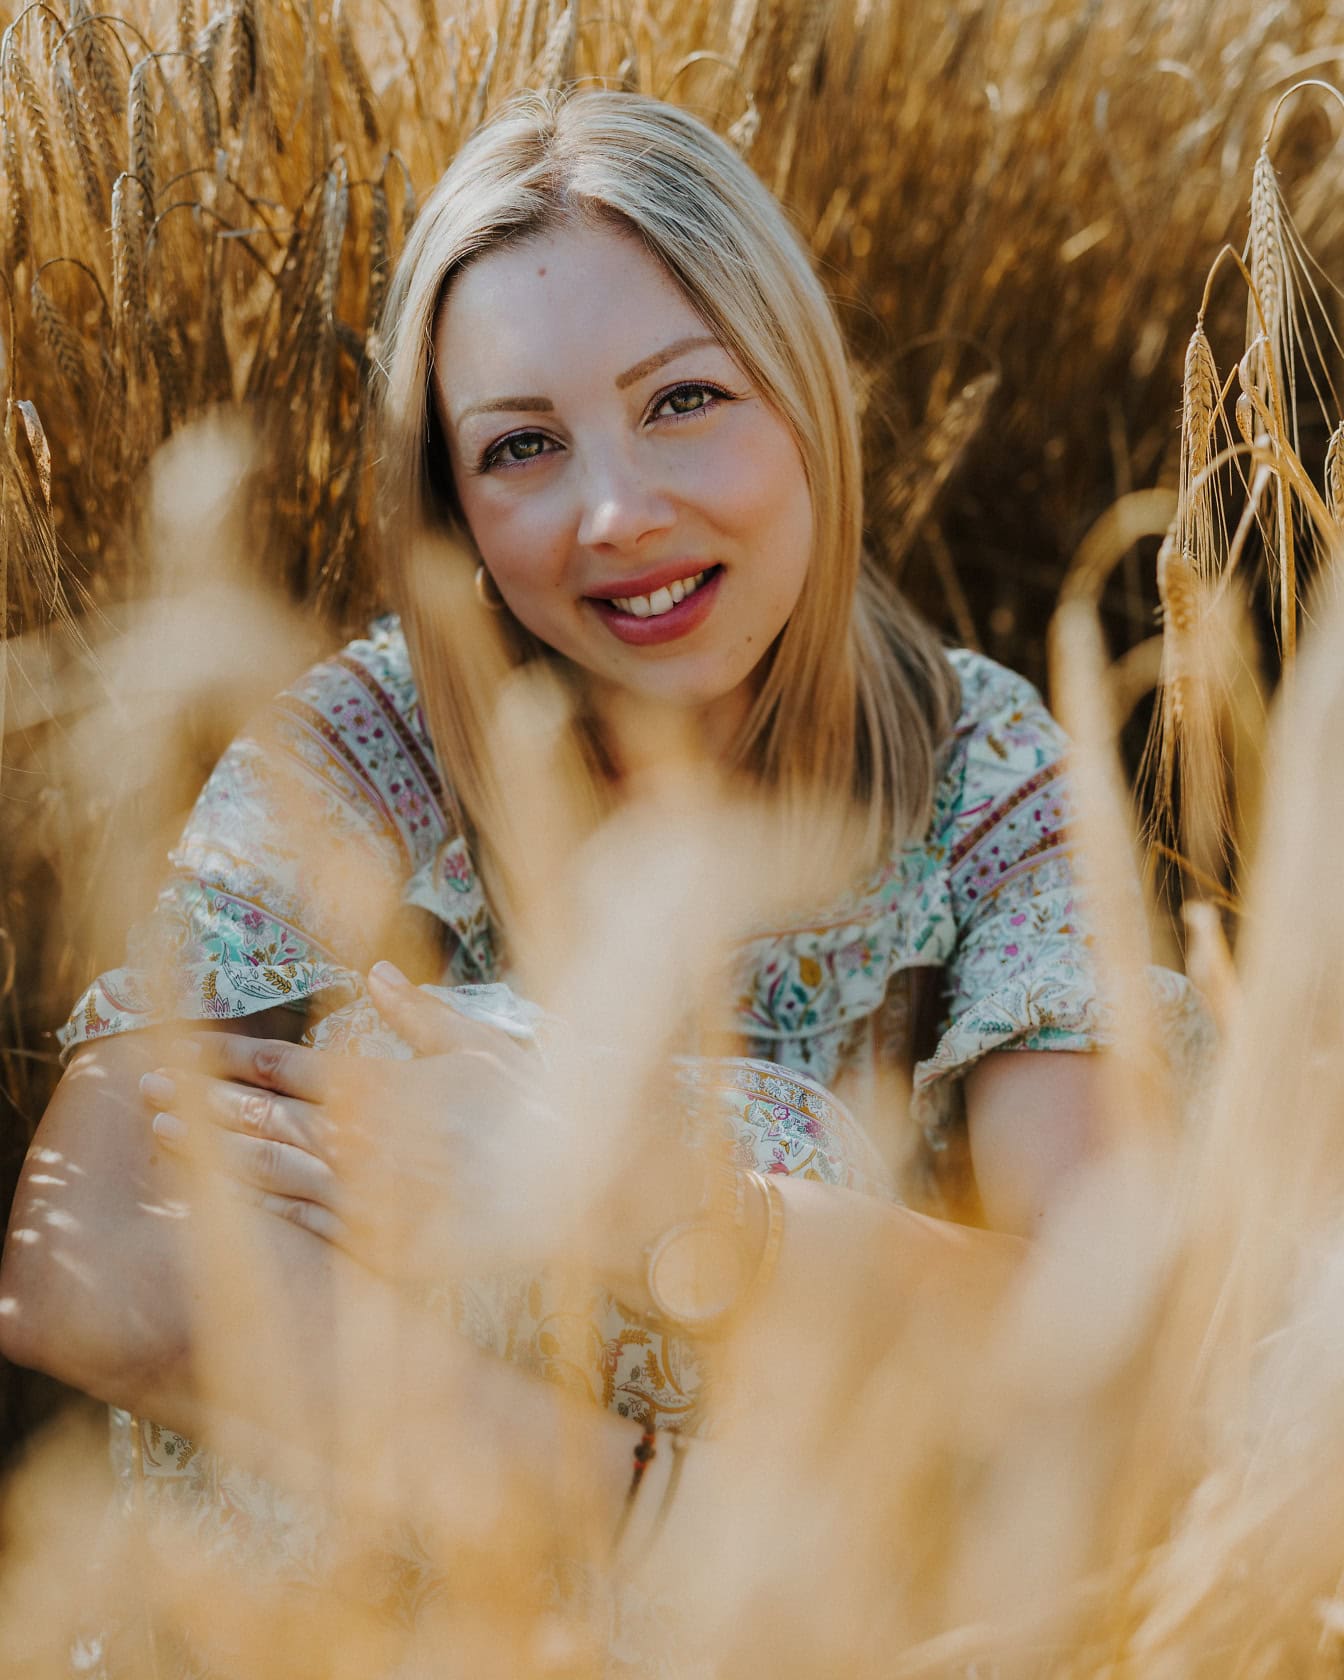 Một người phụ nữ tóc vàng xinh đẹp ngoạn mục ngồi và mỉm cười trên cánh đồng lúa mì